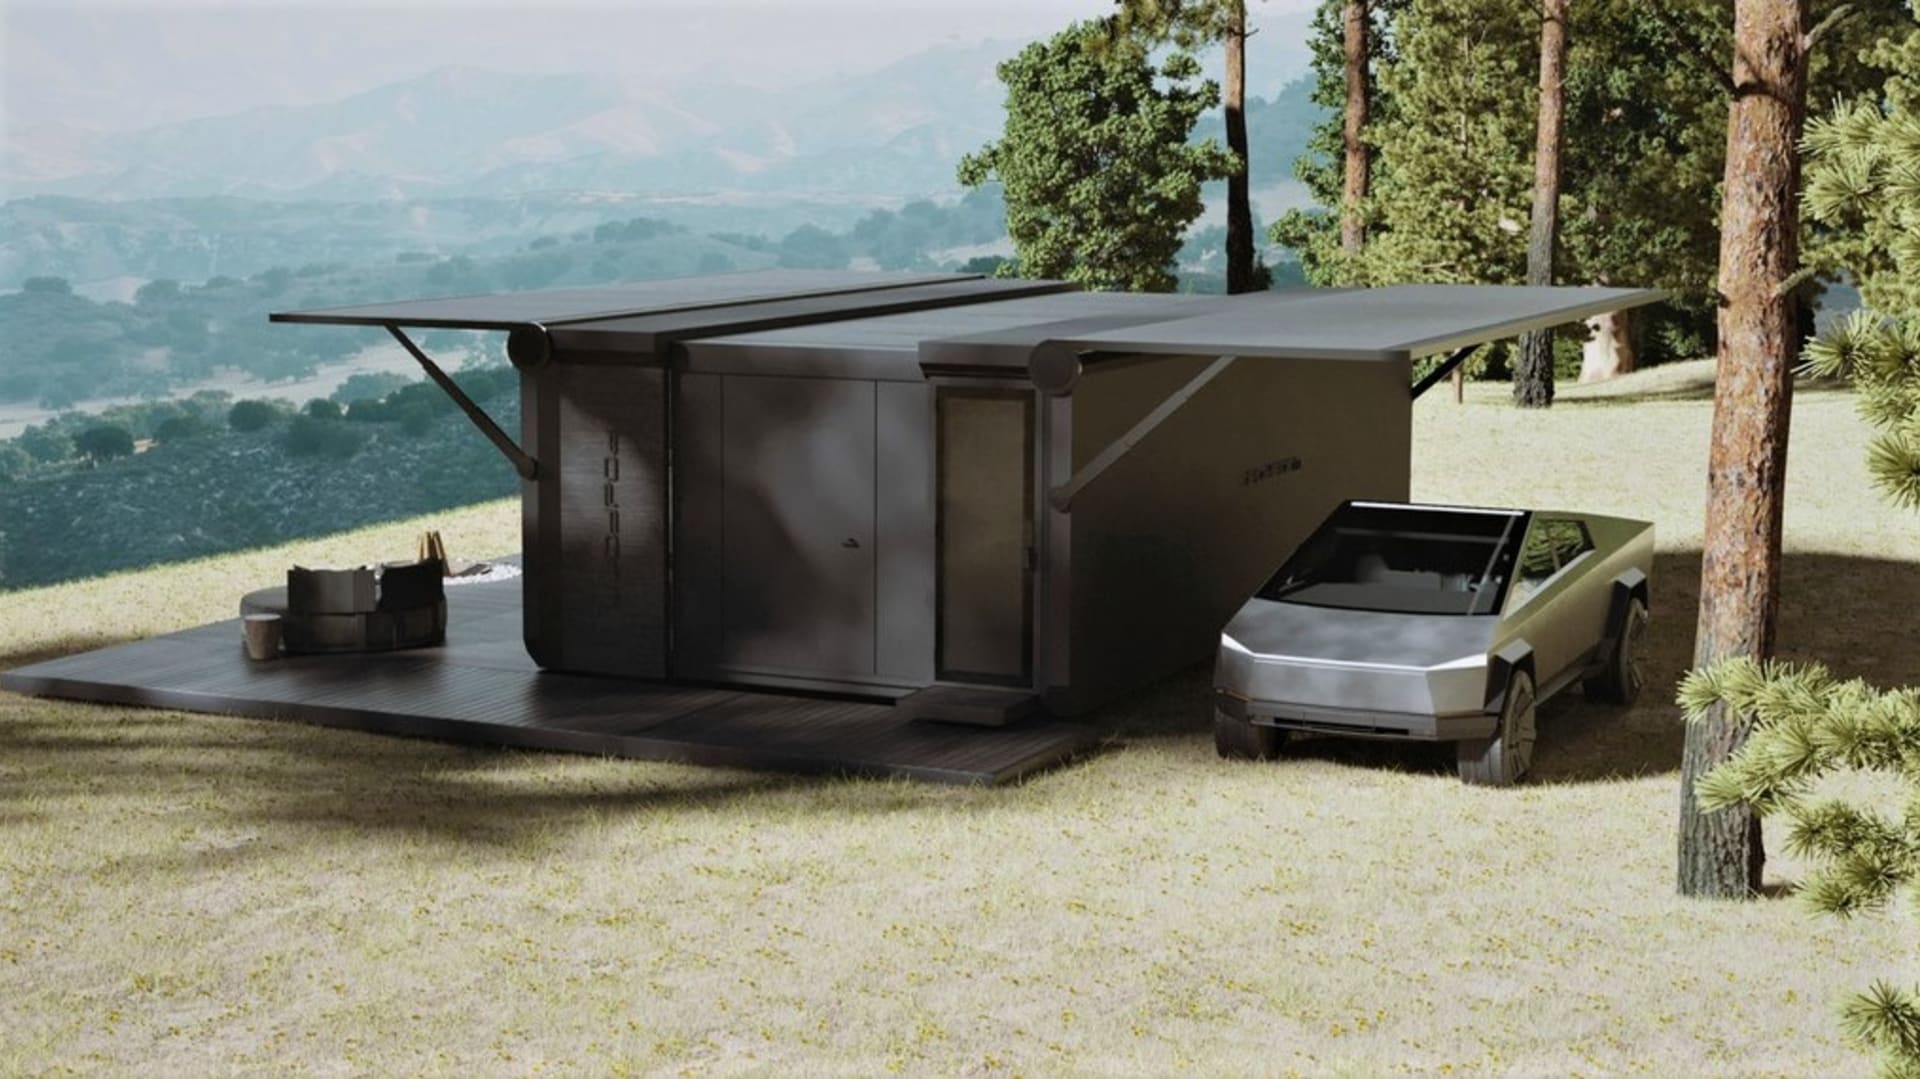 Moderní mobilní off grid domek Studio Pod: Ať už chcete žít v přírodě, bydlet na odlehlém místě nebo žít  tam, kam vás vítr zanese, je  pro vás malý domek mimo síť  skvělým řešením.